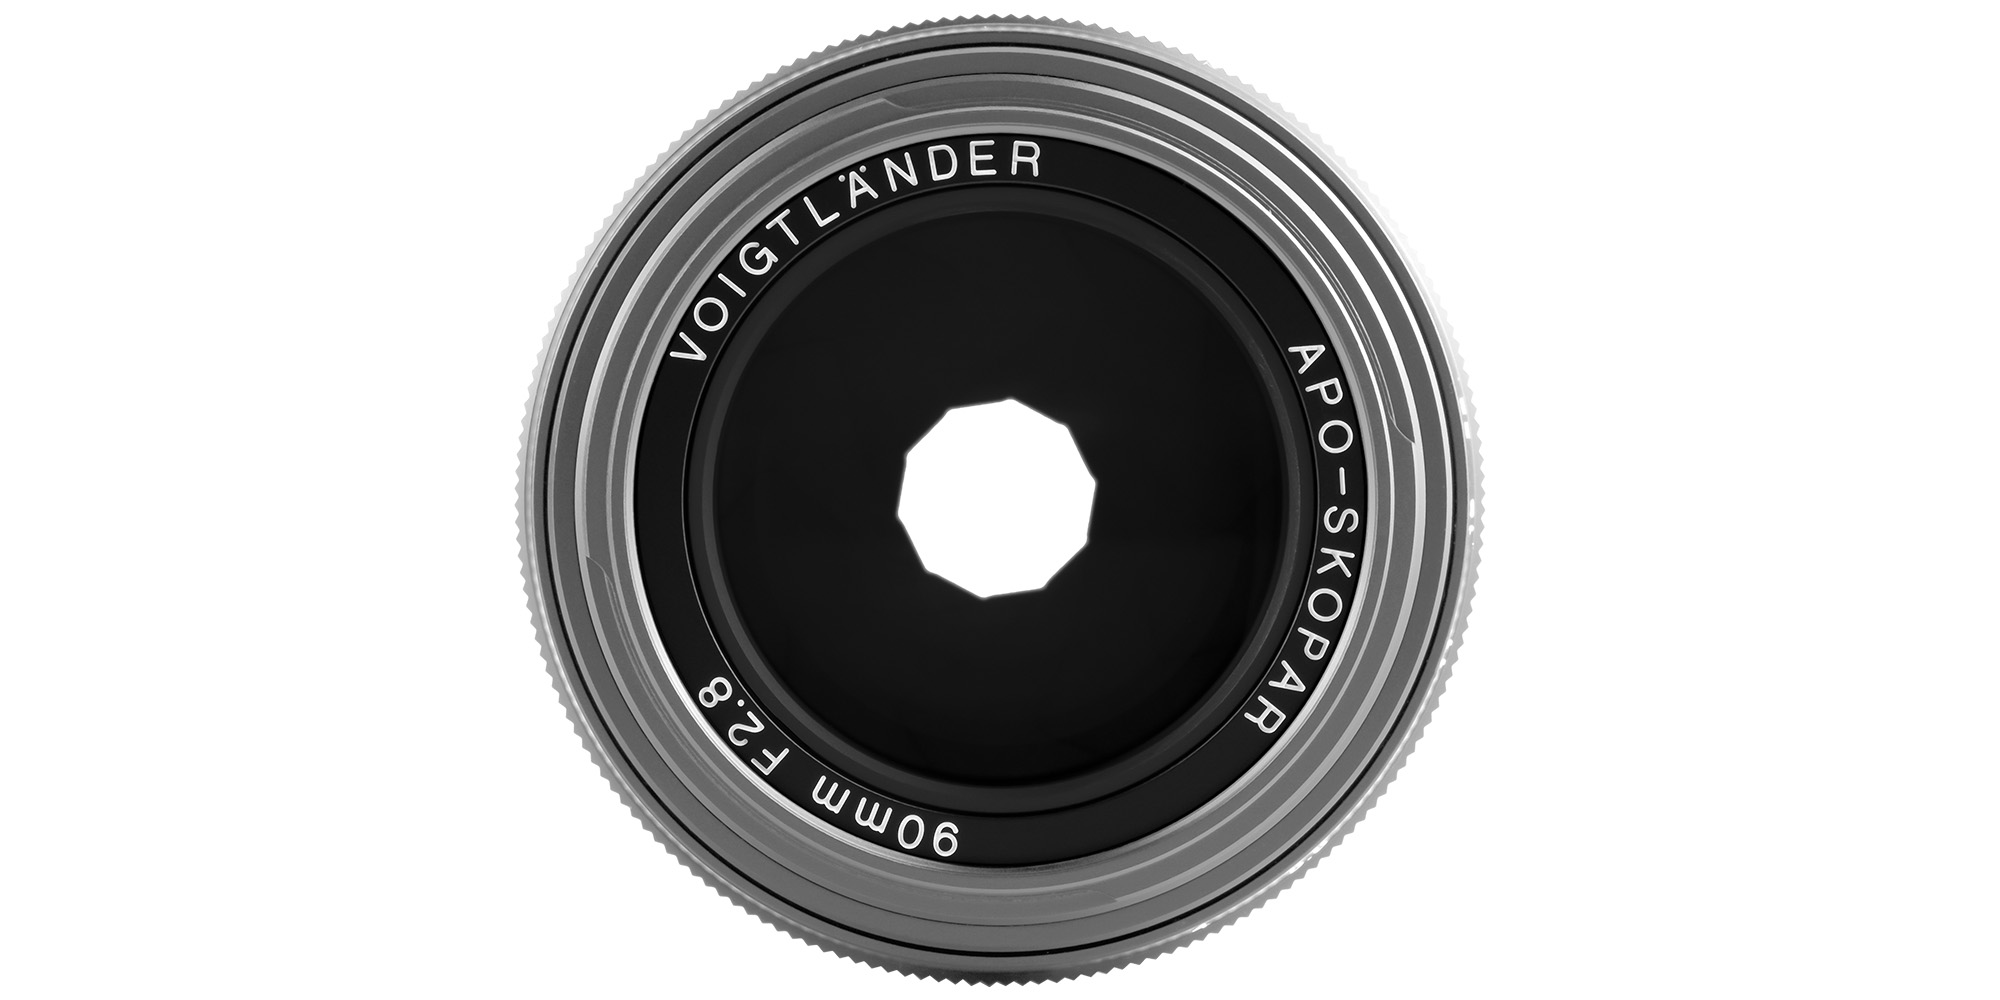 Voigtlander APO Skopar 90mm f/2.8 Objektiv für Leica M - Silber - Sanfte Steuerung des Lichts